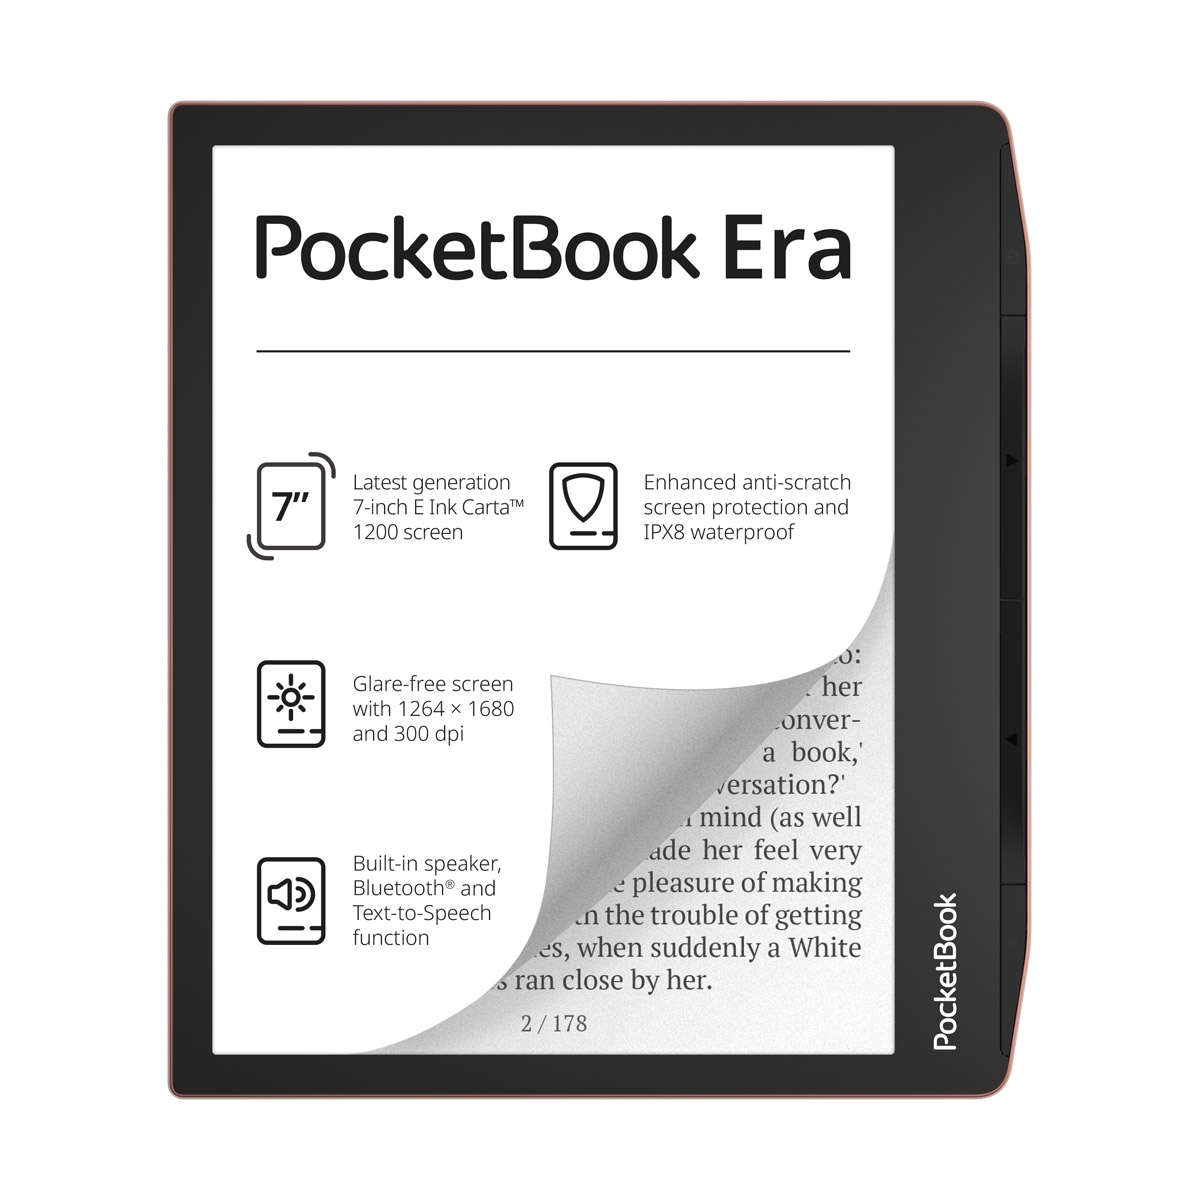 Opinie o PocketBook Era 64GB Miedziany + etui Shell Brązowe + 60 dni Legimi + 1100 ebooków GRATIS! - Wysyłka 24H lub odbiór osobisty we Wrocławiu!